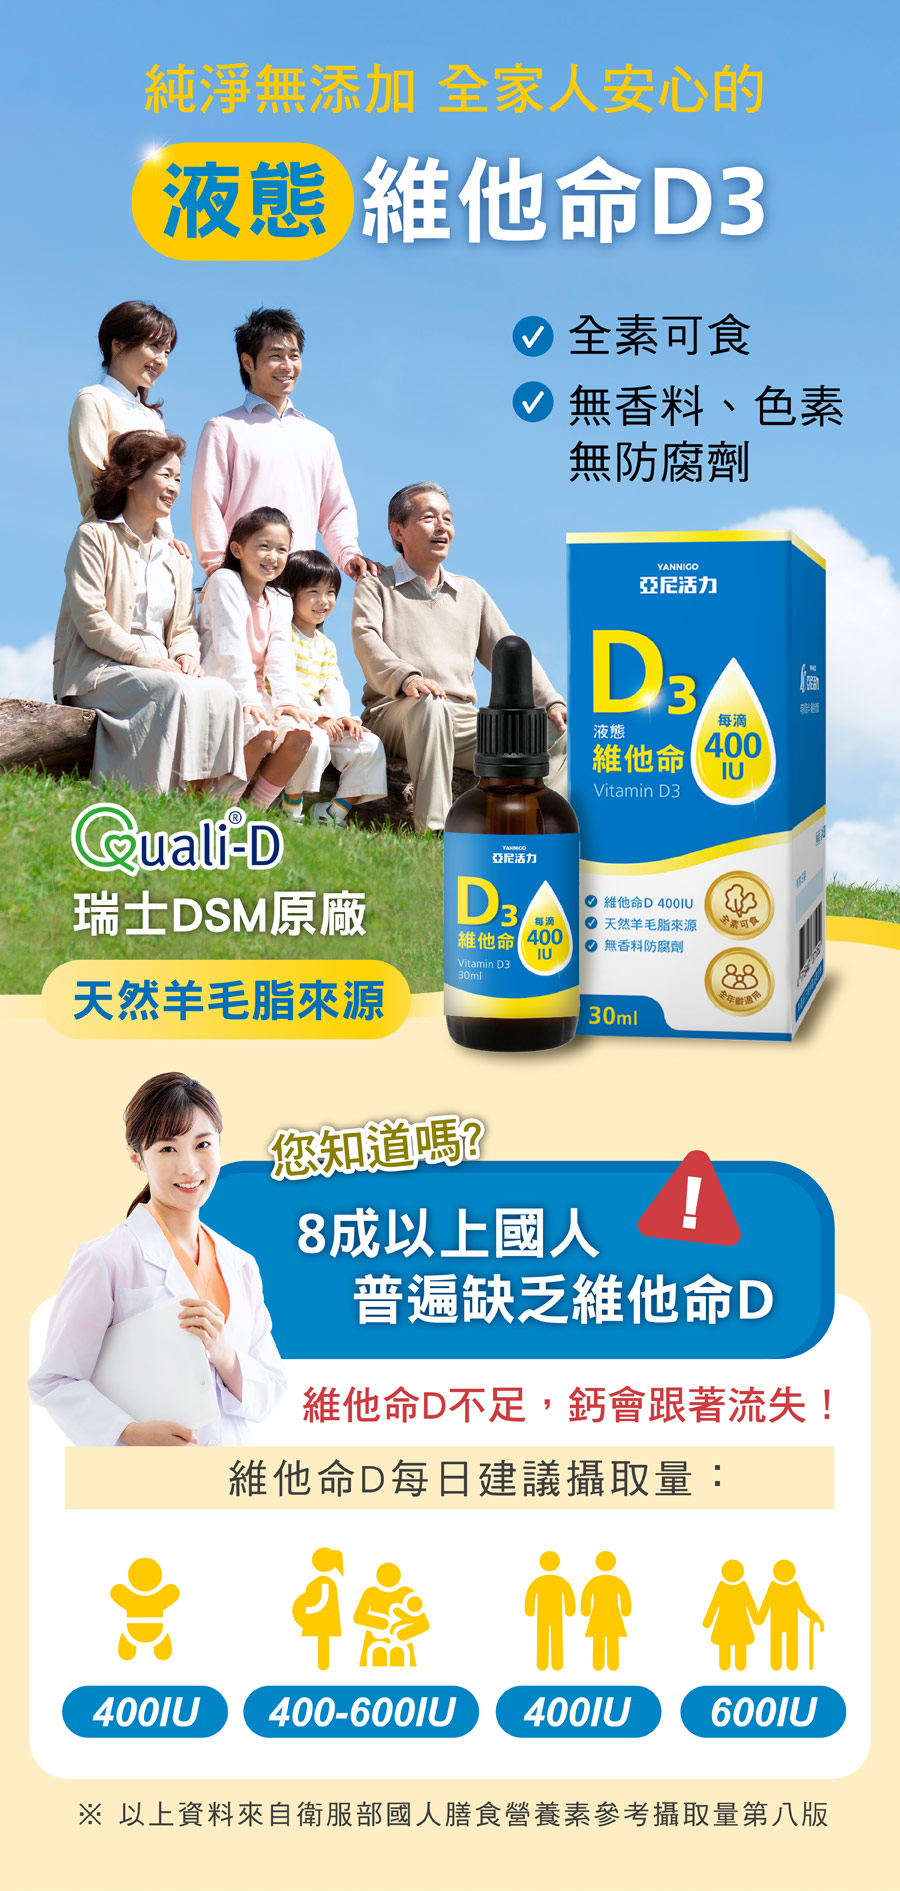 瑞士DSM大廠Quali-D天然羊毛脂來源維他命D3-亞尼活力液態維他命D3，全素可食、無香料、無色素、無防腐劑添加，8成台灣國人普遍缺乏維他命D，鈣會跟著流失